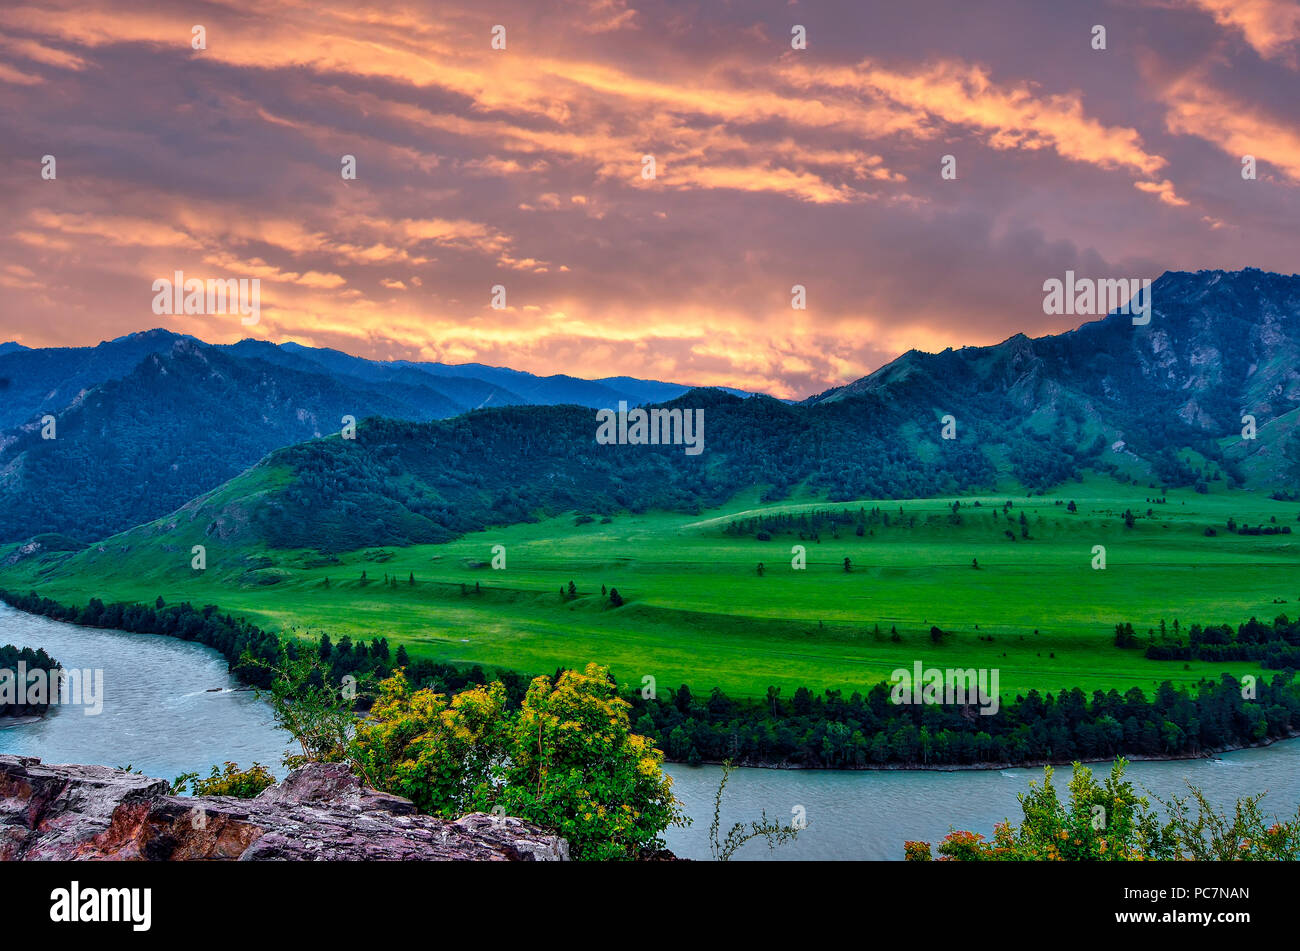 Crépuscule sur la montagne rose turquoise de la rivière Katun au coucher du soleil - beau soir paysage estival, montagnes de l'Altaï, en Russie. Beauté magique de la nature Banque D'Images